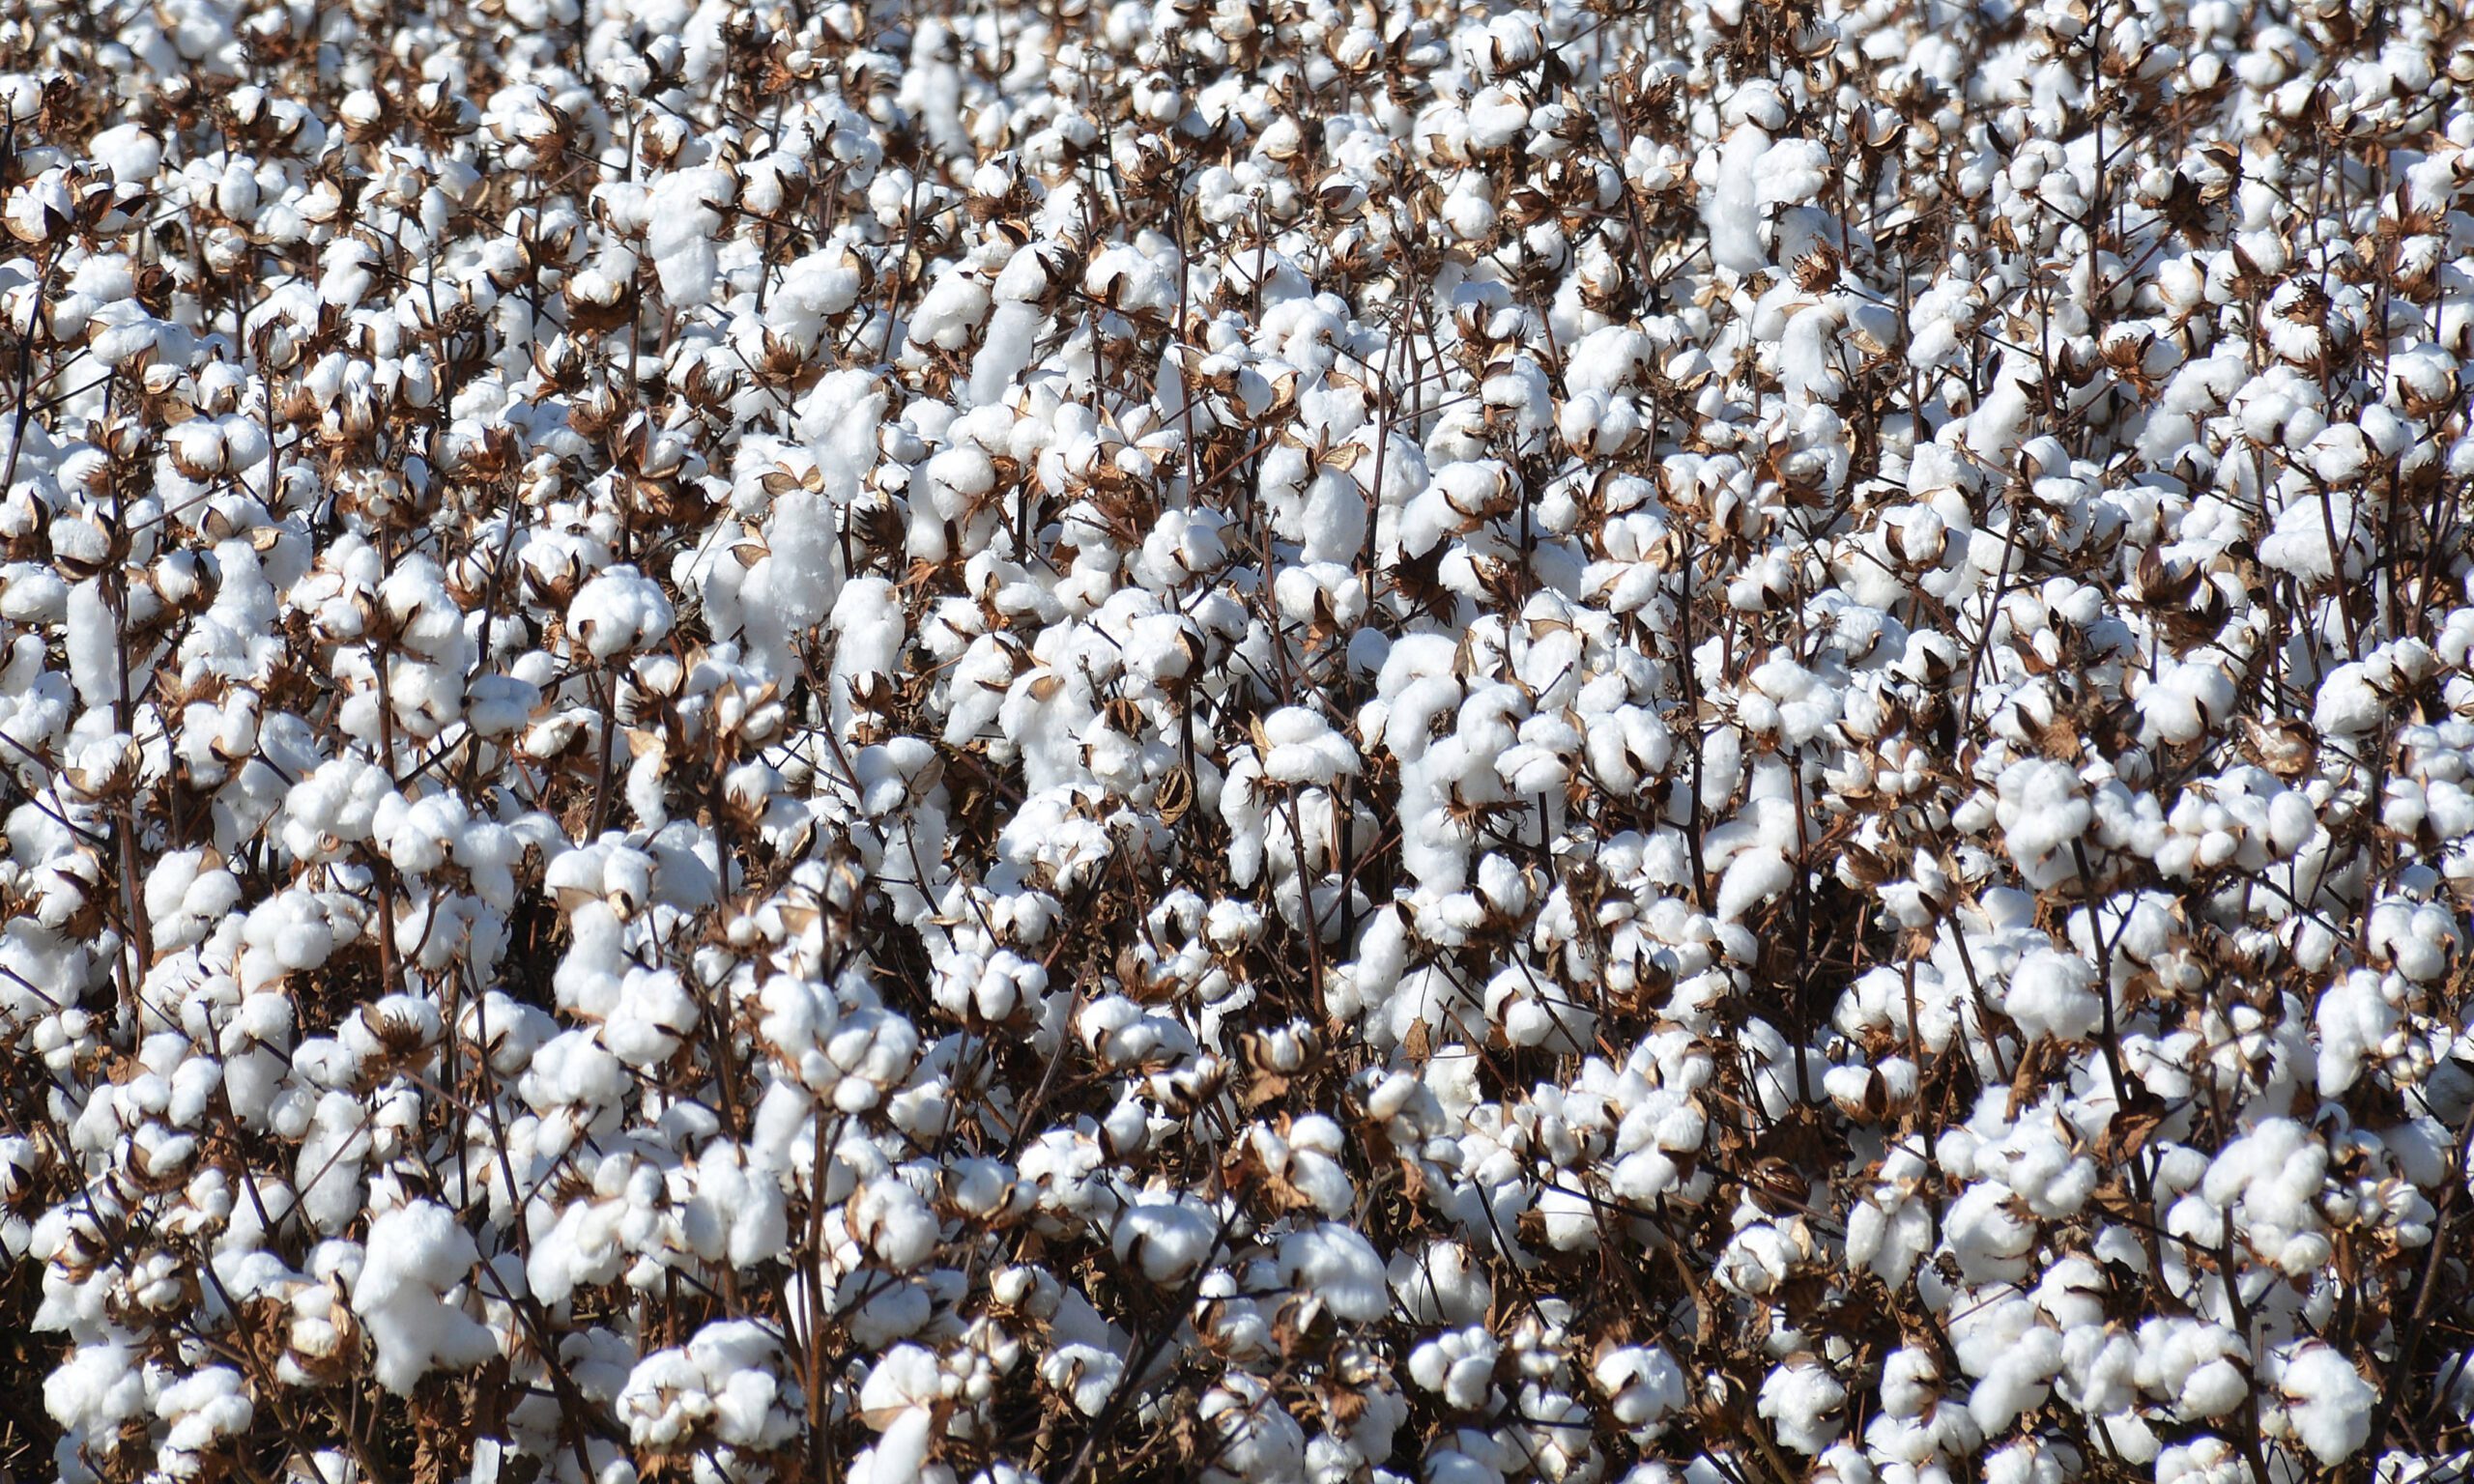 Cotton Production 